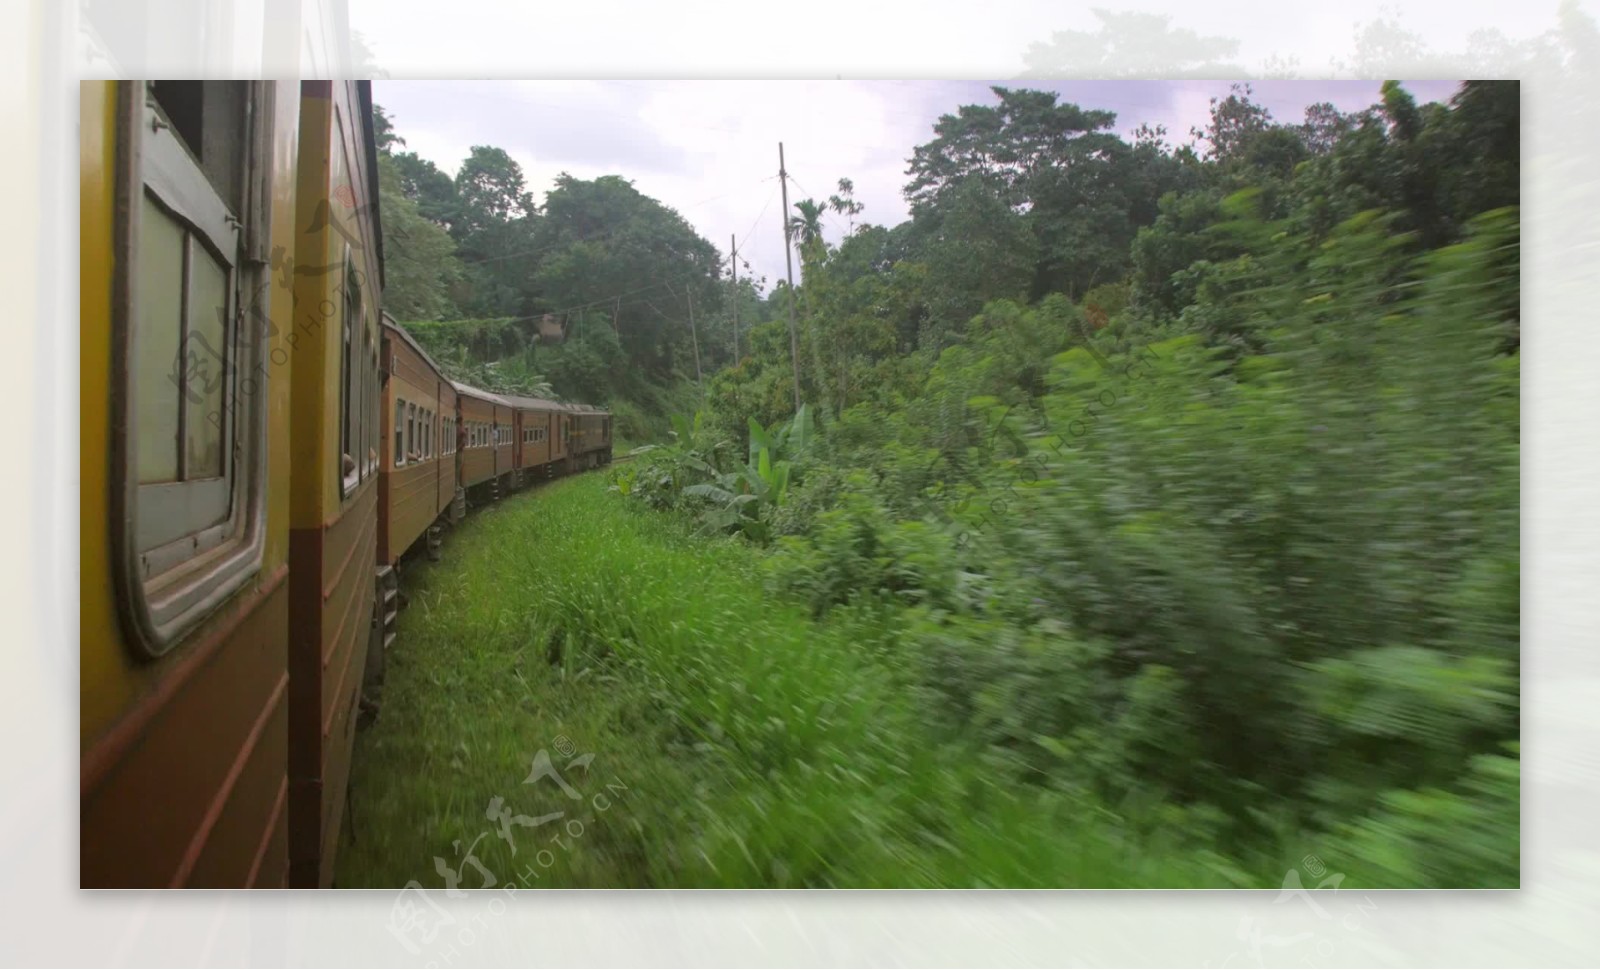 斯里兰卡火车穿越丛林